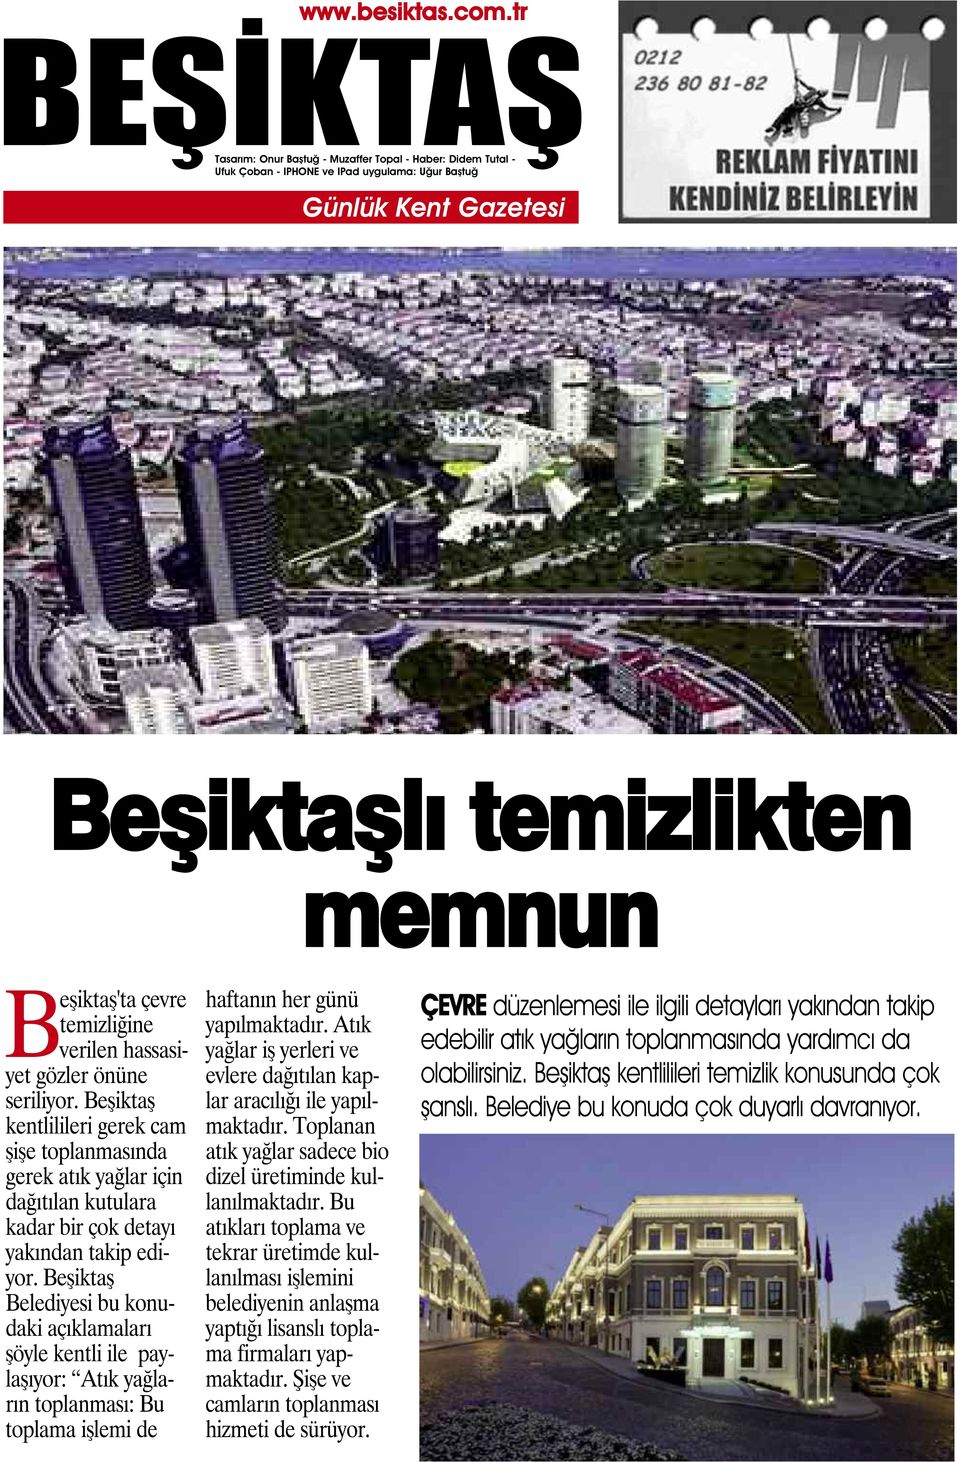 Beşiktaş Belediyesi bu konudaki açıklamaları şöyle kentli ile paylaşıyor: Atık yağların toplanması: Bu toplama işlemi de haftanın her günü yapılmaktadır.